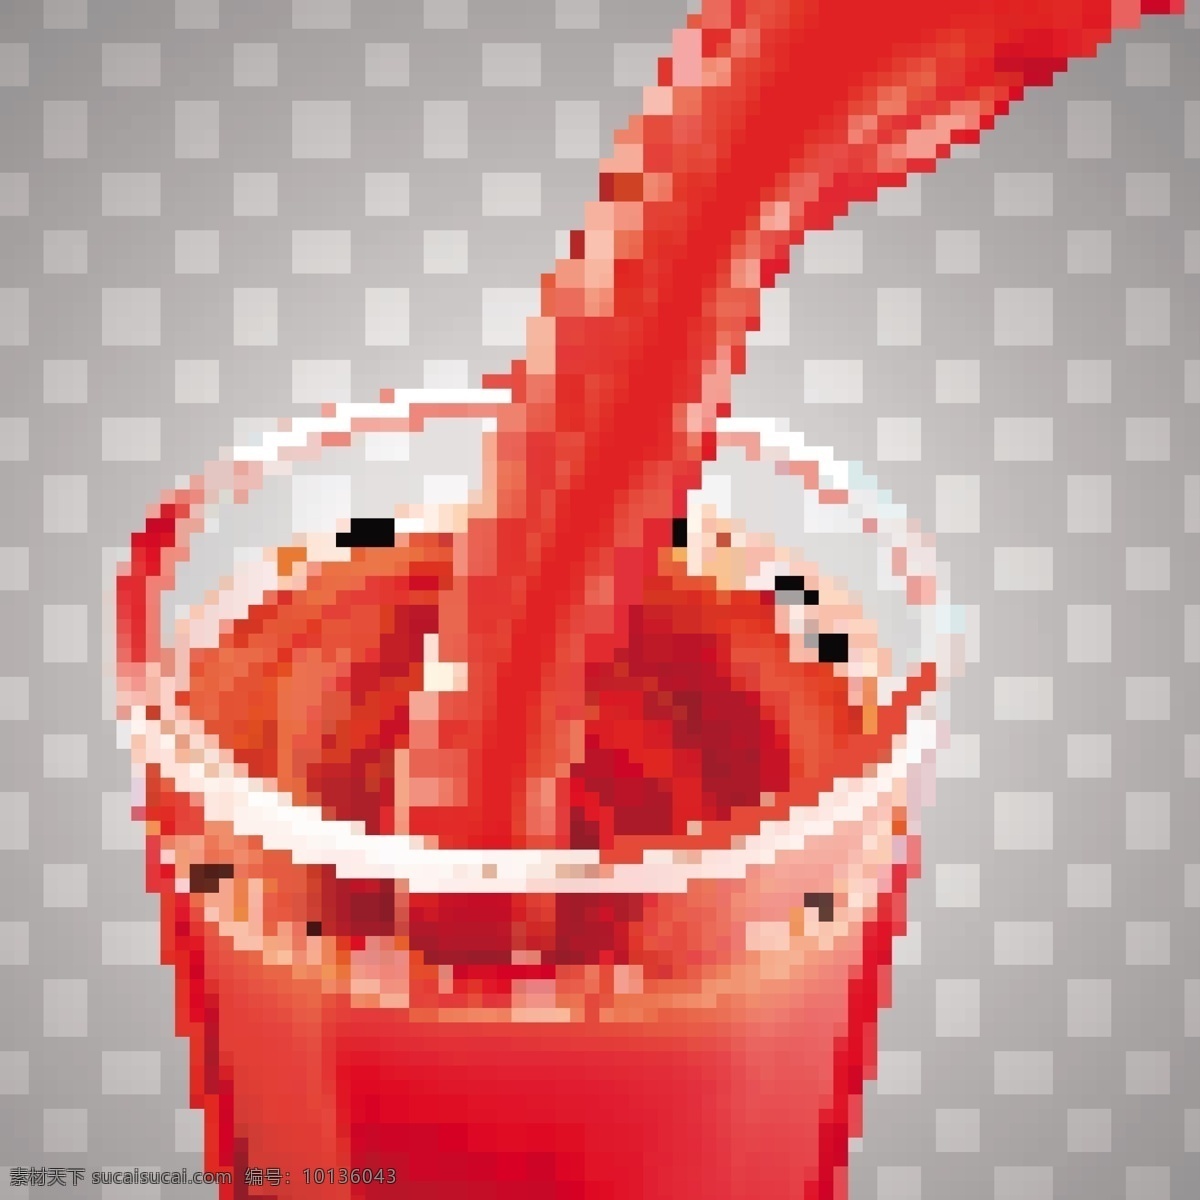 番茄汁 矢量图 杯子 倒番茄汁 红色液体 灰色格子背景